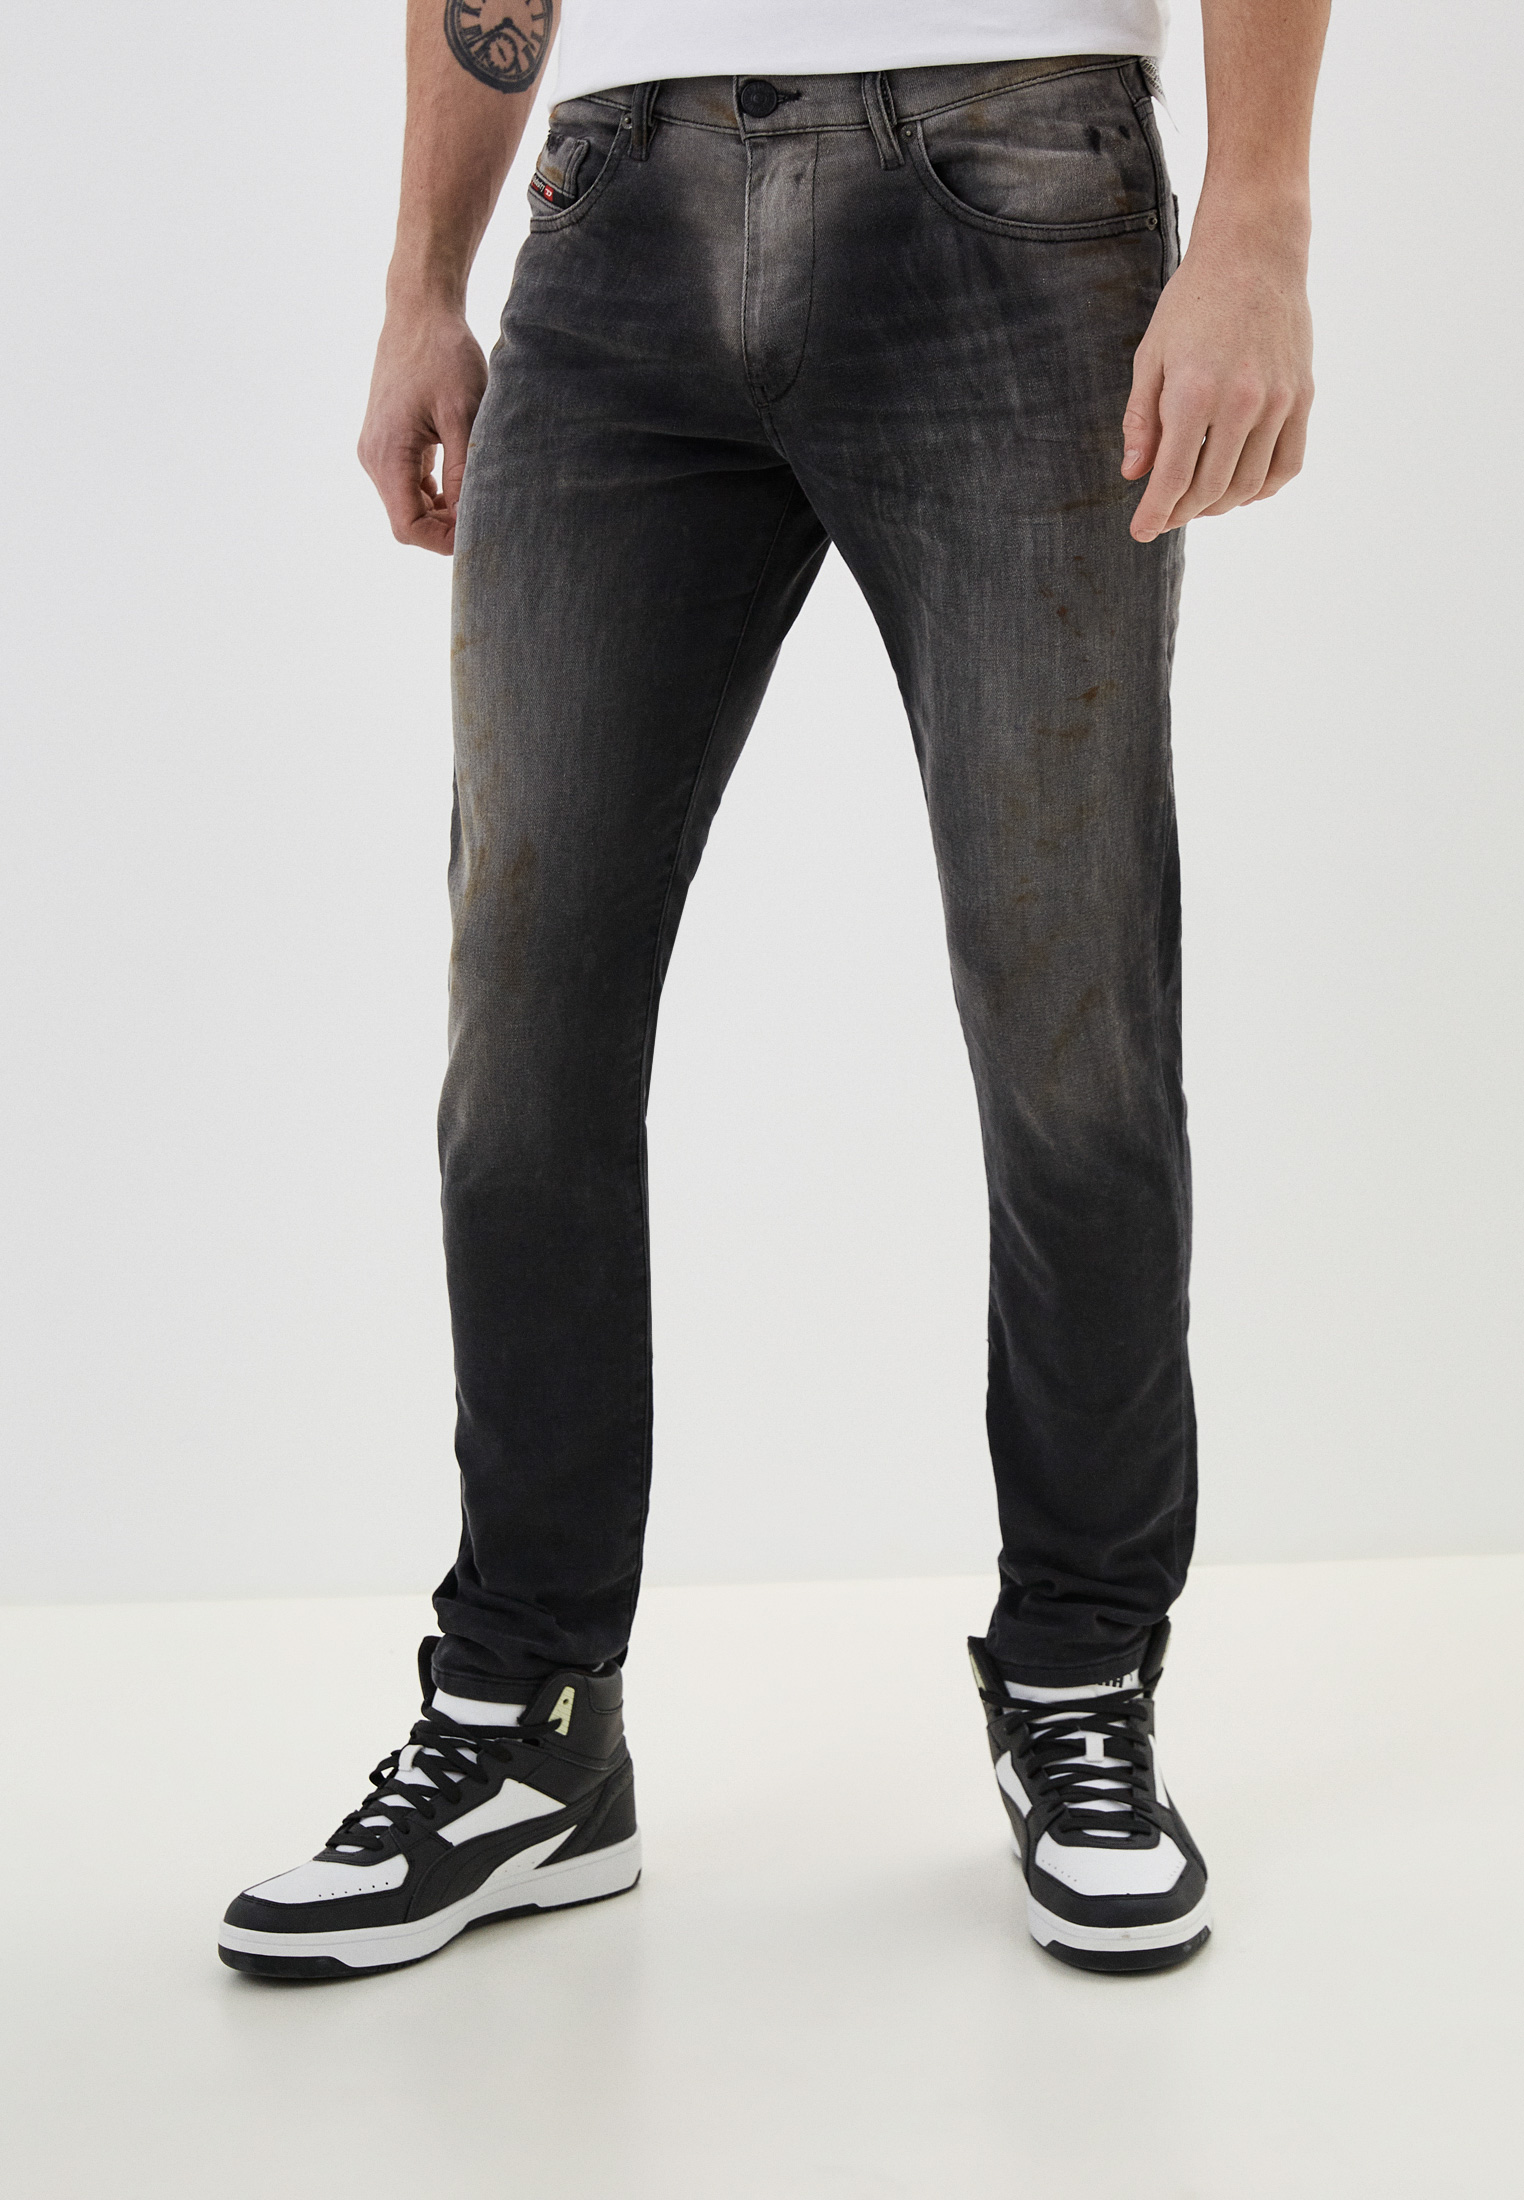 Мужские зауженные джинсы Diesel (Дизель) A0101709B04: изображение 1